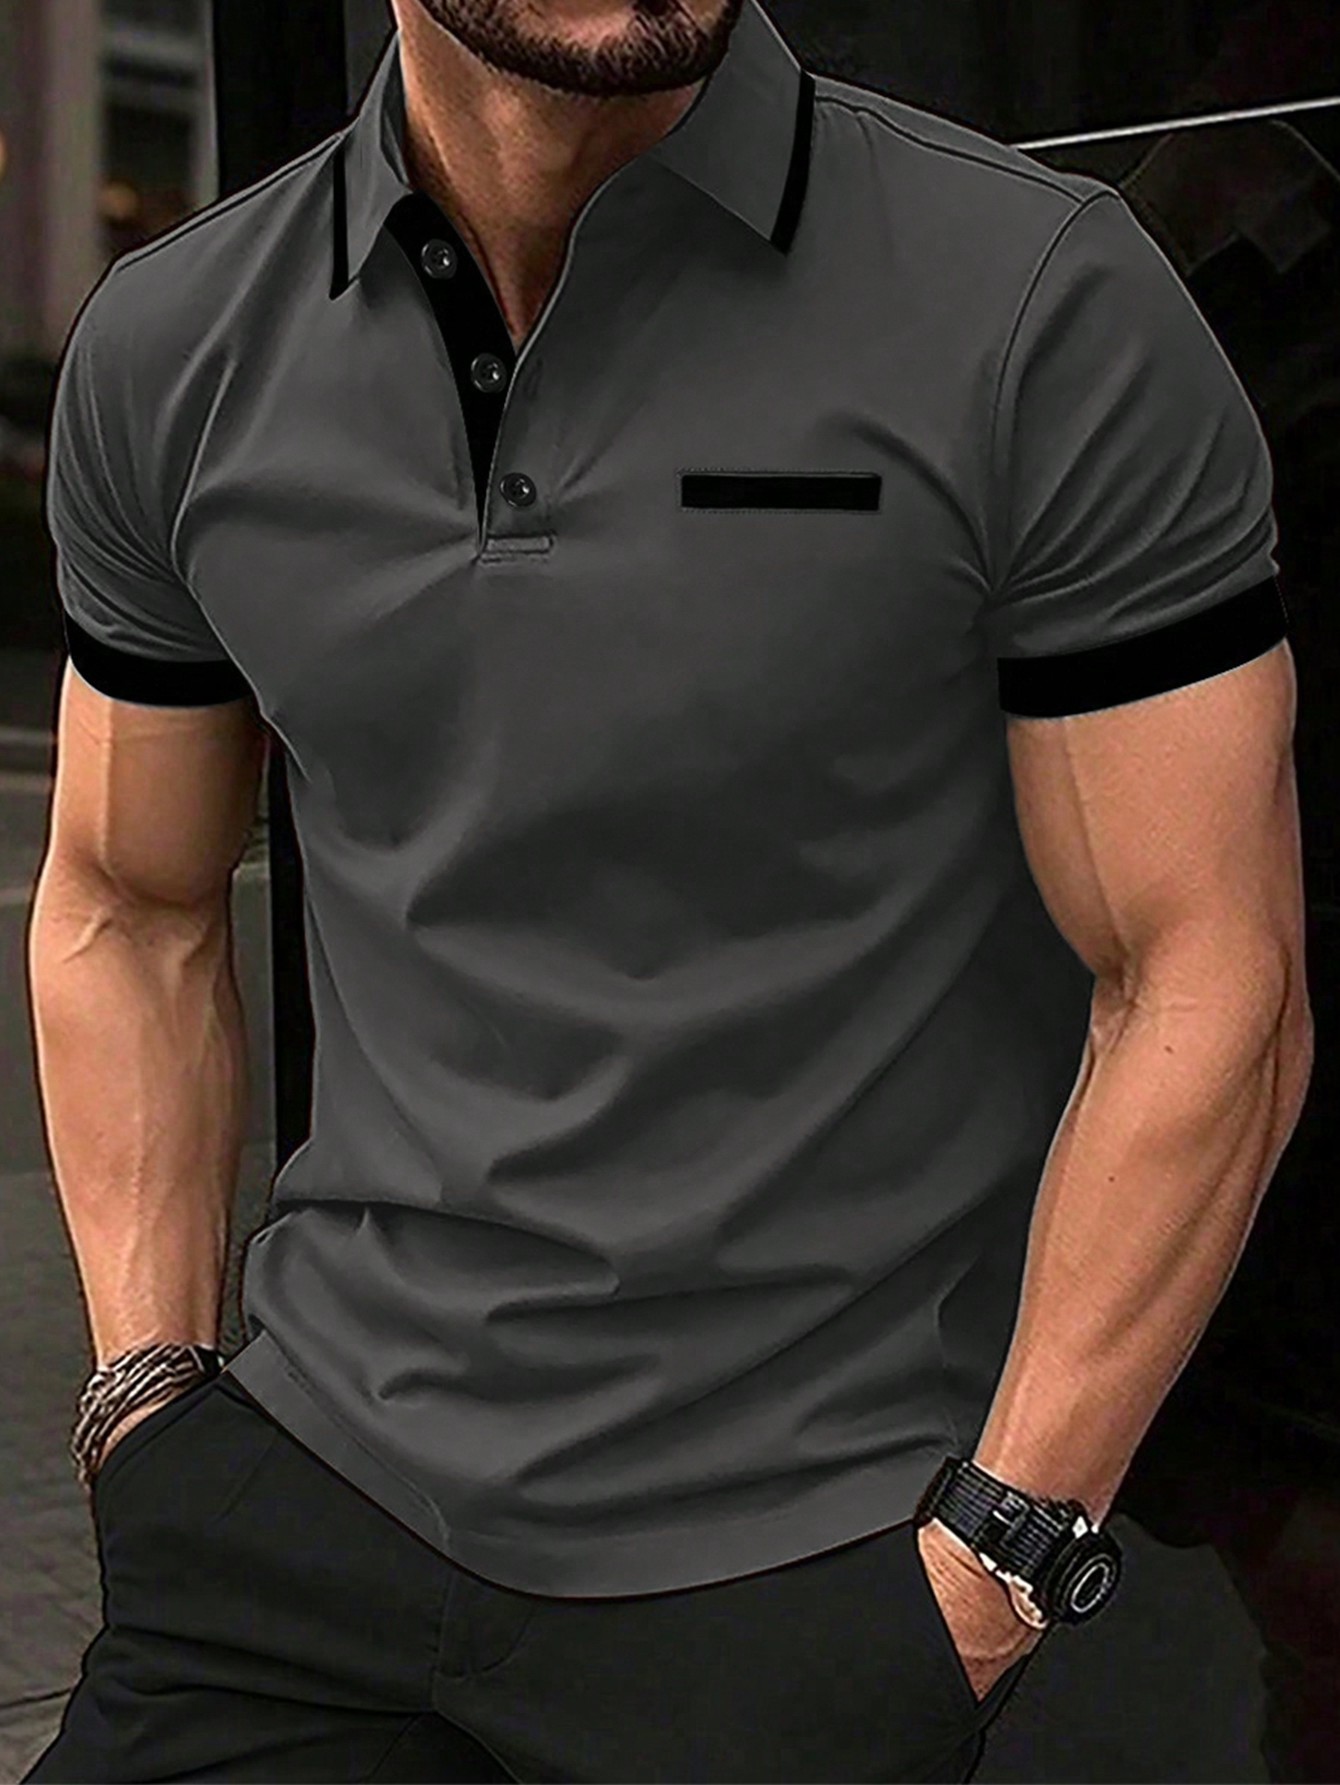 Мужская рубашка-поло контрастного цвета Manfinity Homme, темно-серый